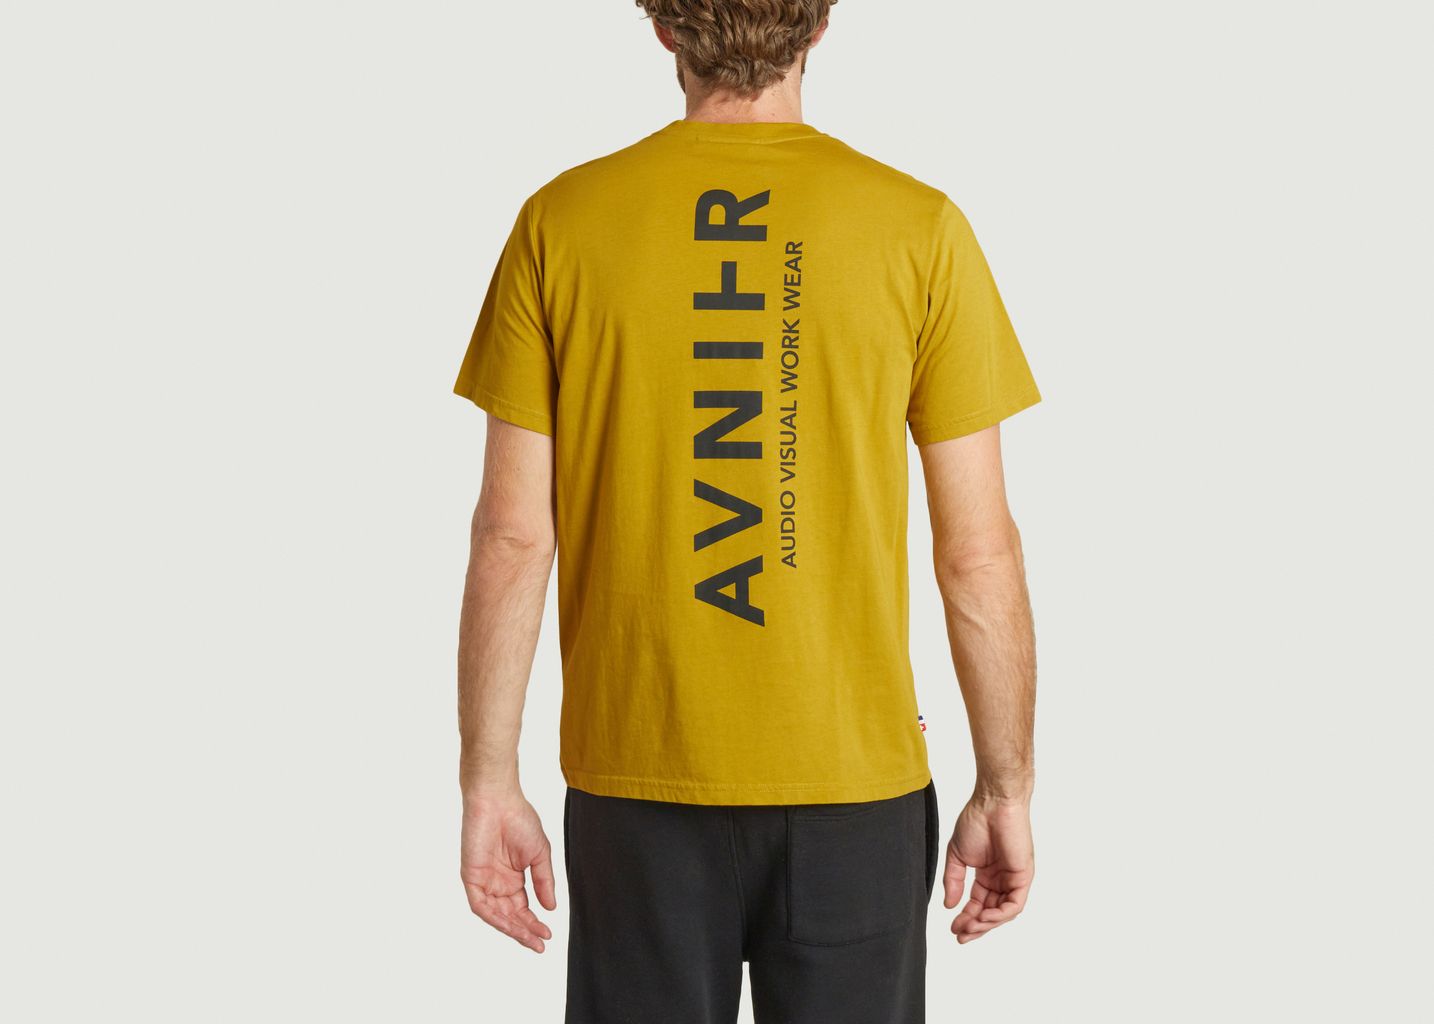 T-Shirt Source VERTICAL V3 - AVNIER